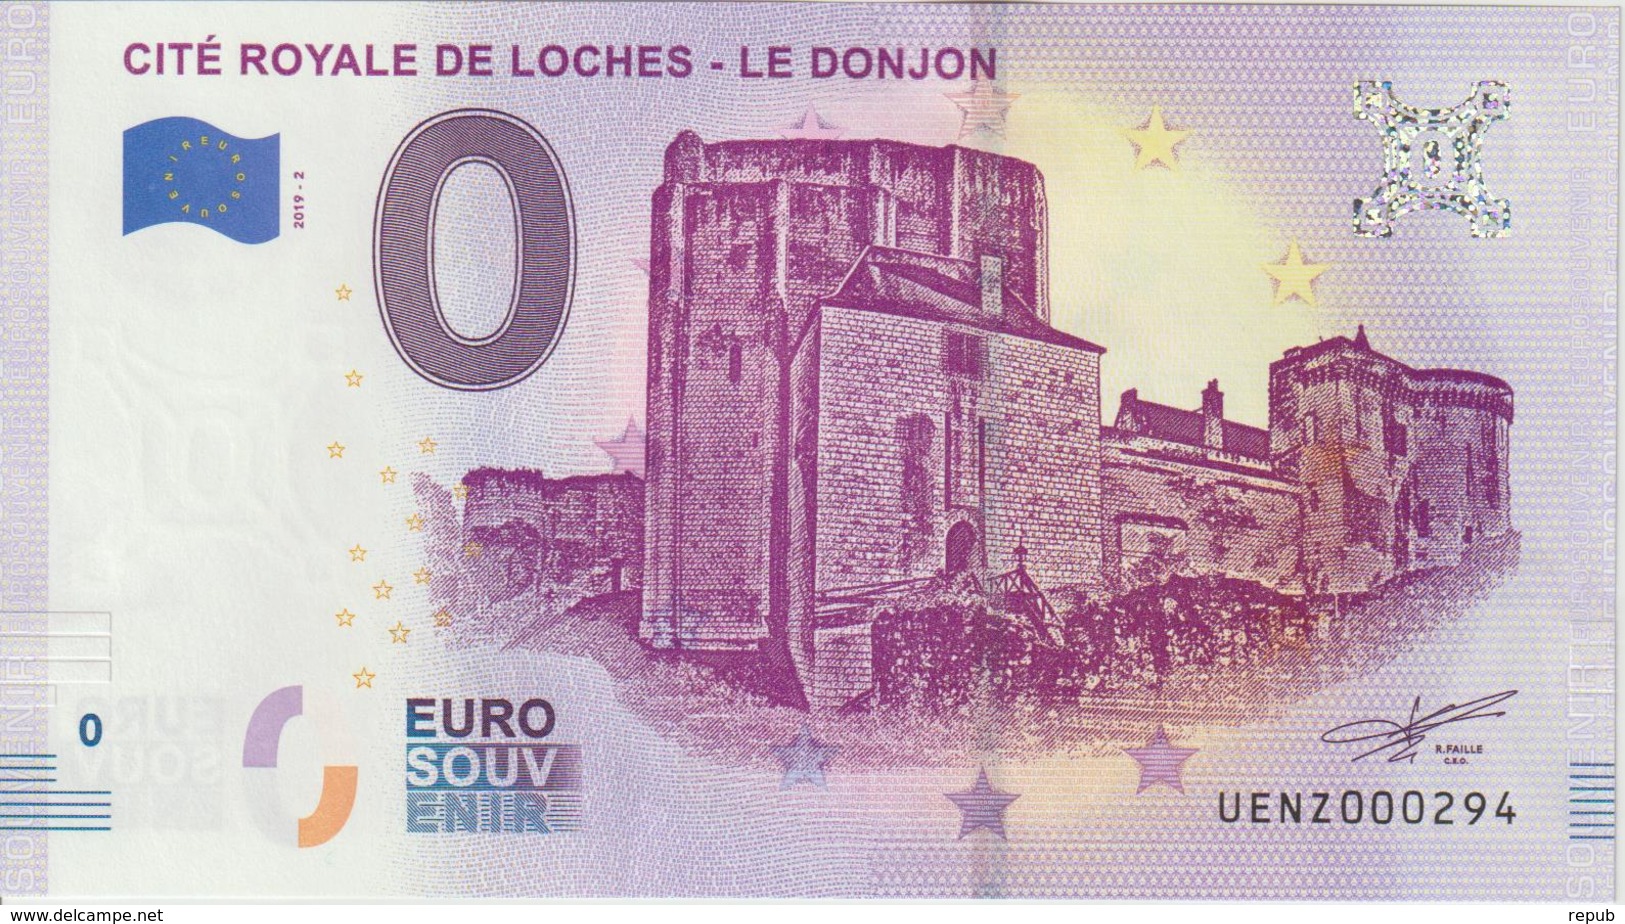 Billet Touristique 0 Euro Souvenir France 37 Loches Donjon 2019-2 N°UENZ000294 - Essais Privés / Non-officiels